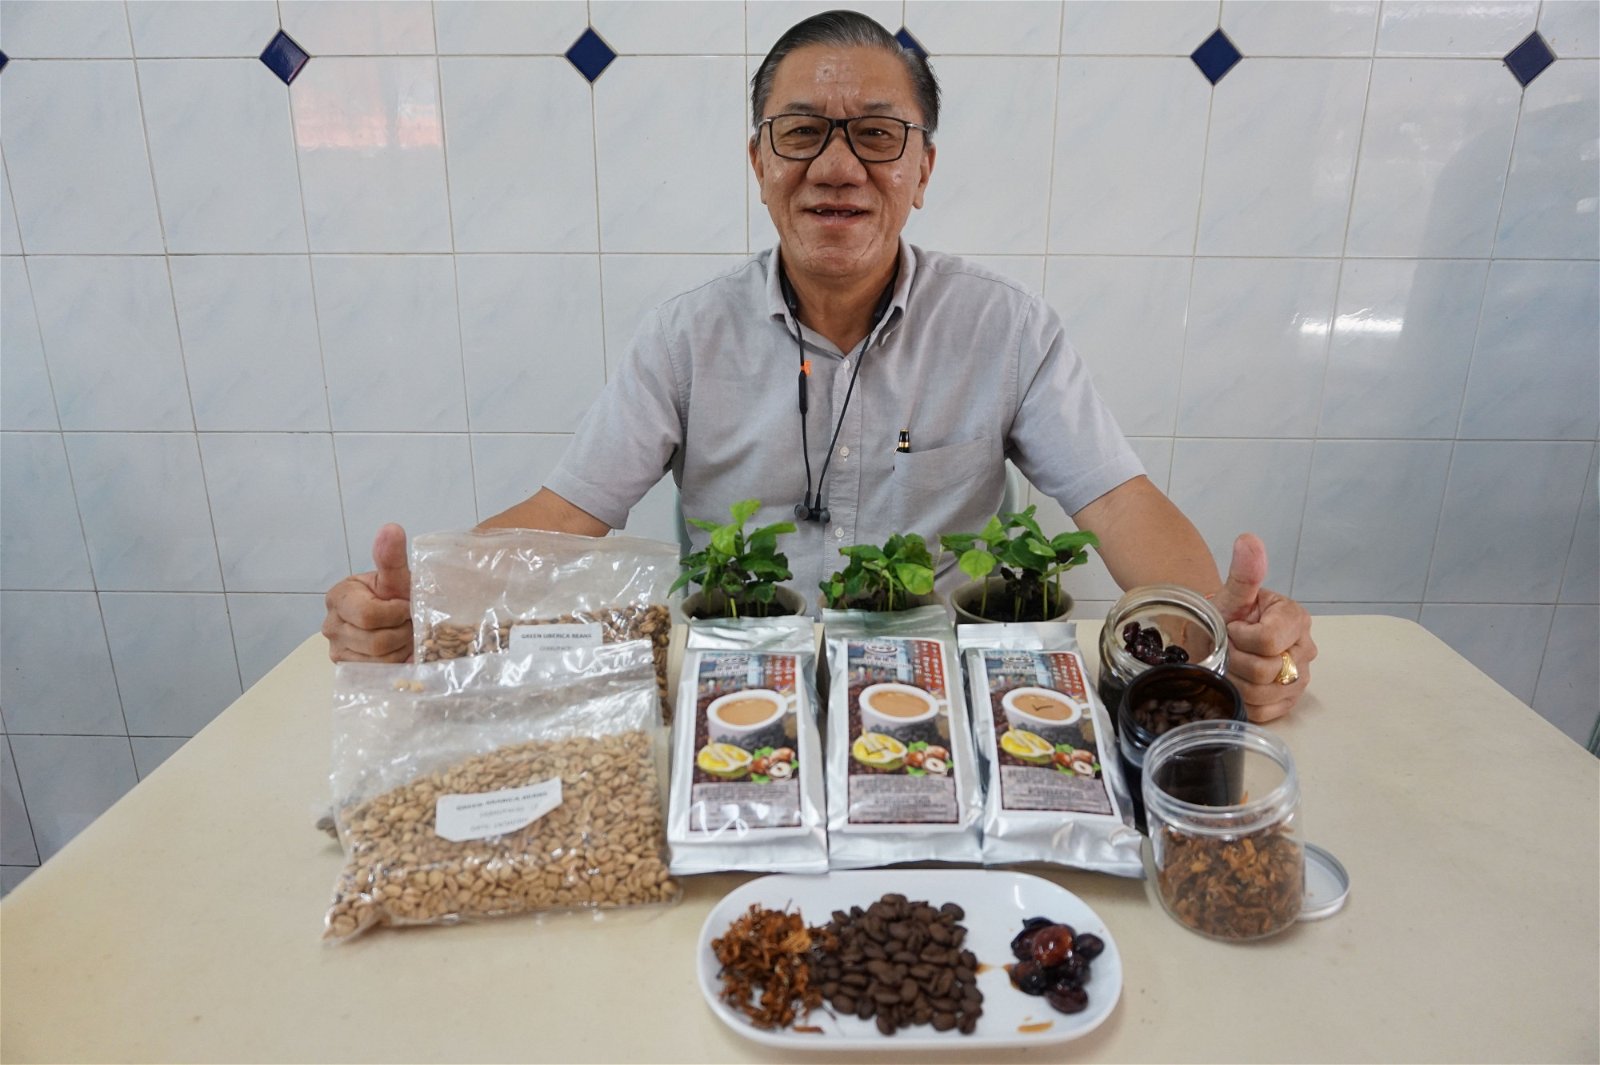 打造新咖啡山品牌的工作进展顺利，曾广海指去年收成的咖啡豆已制成即溶白咖啡，出口至中国。